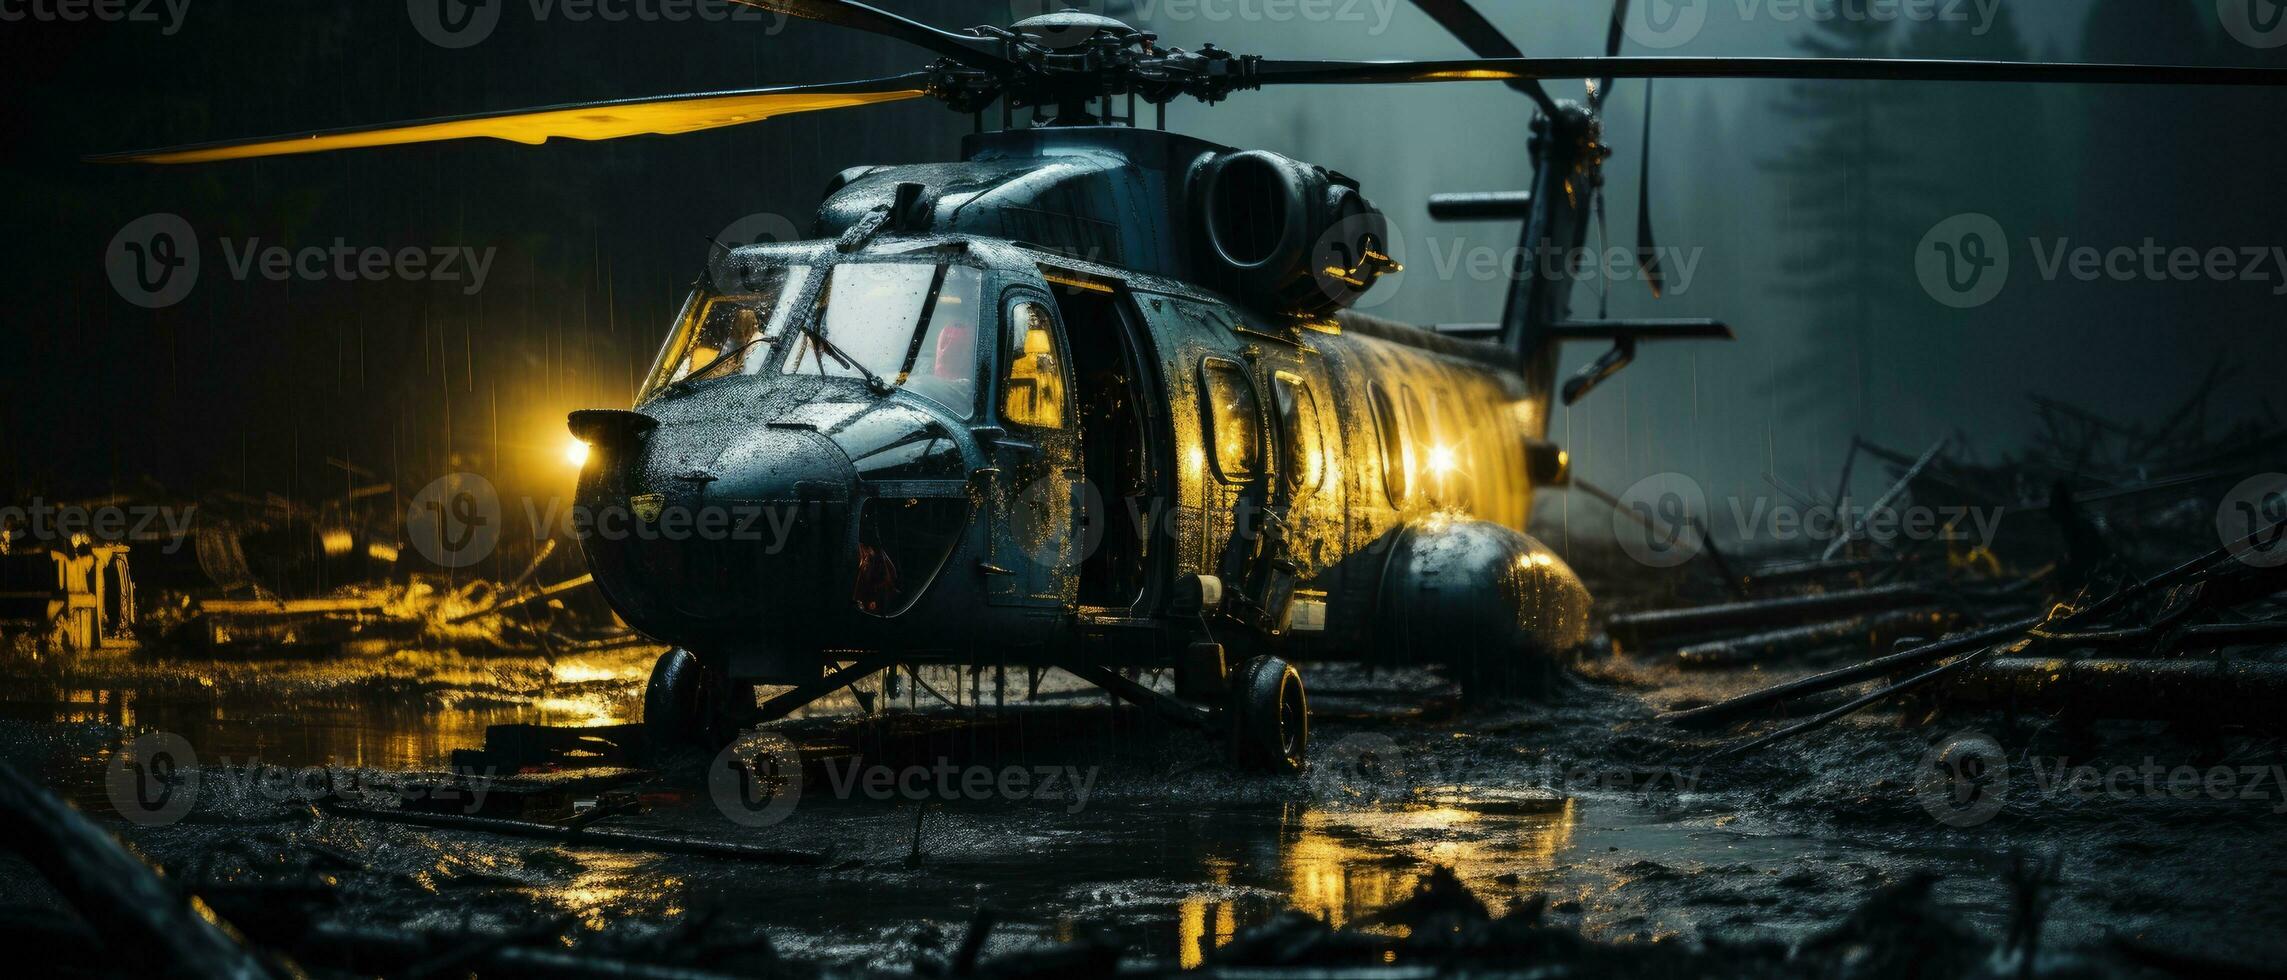 grande guerra helicóptero militar enviar apocalipsis paisaje juego fondo de pantalla foto Arte ilustración oxido